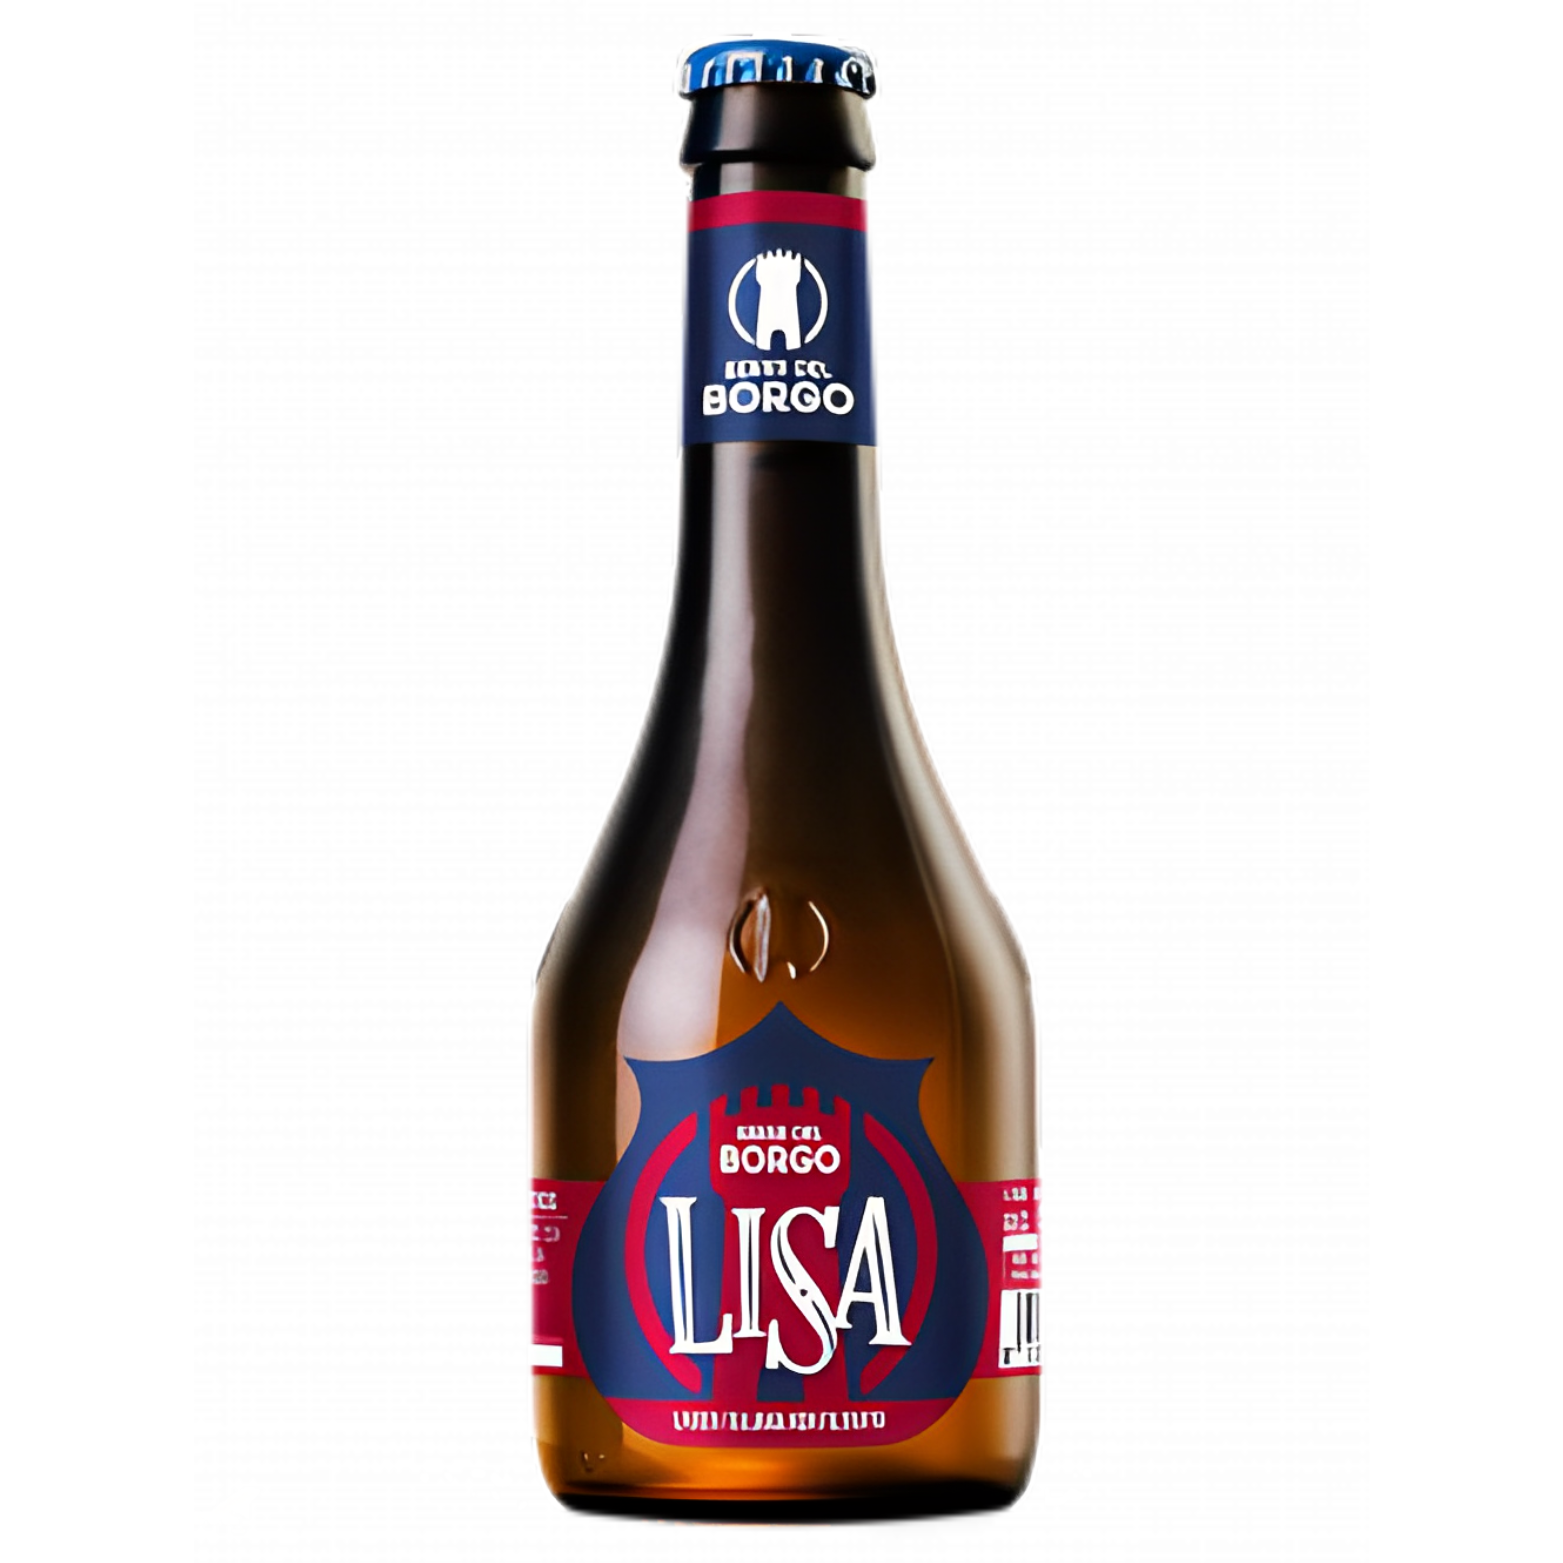 Birra del Borgo “Lisa” – 50cl